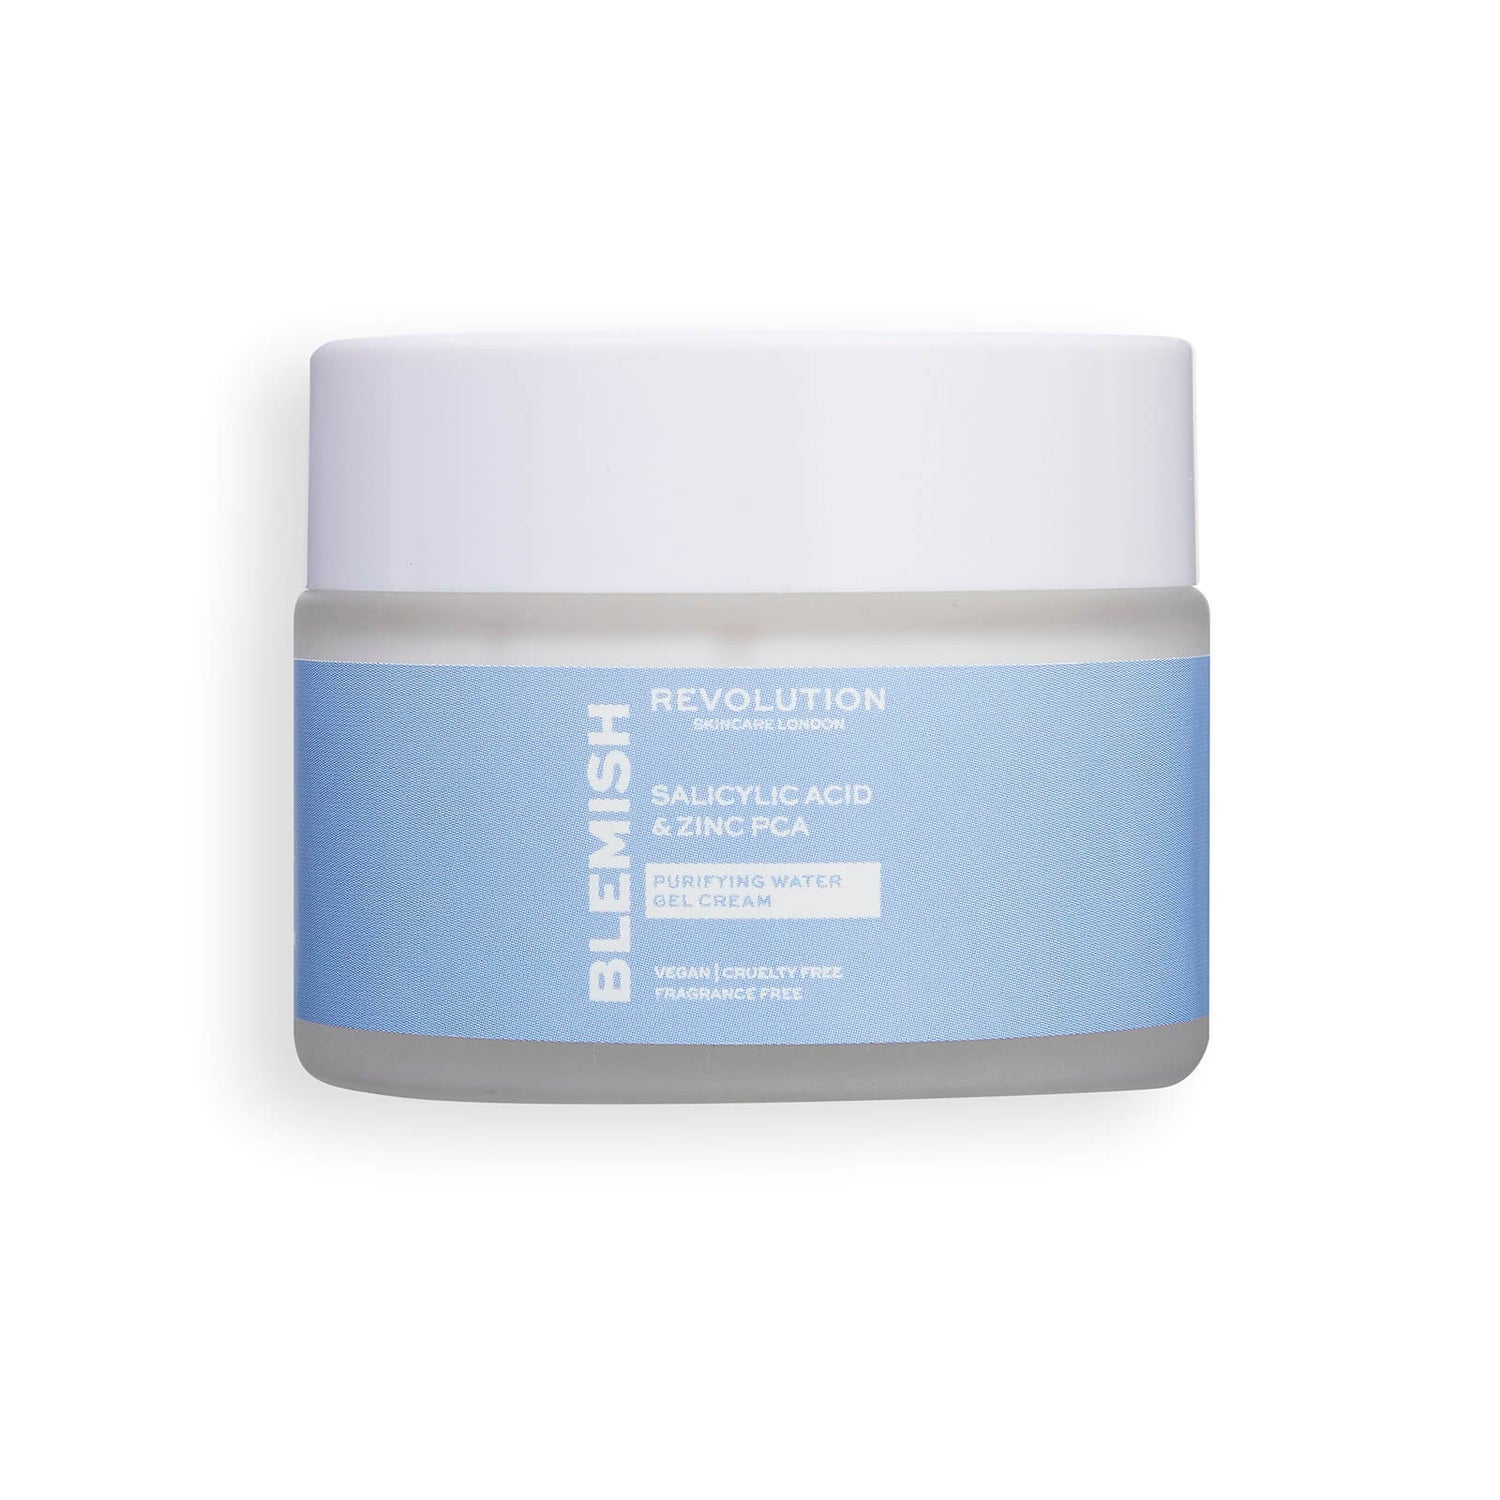 Revolution Skincare Crema Gel de Agua Purificante con Ácido Salicílico y Zinc PCA 50ml